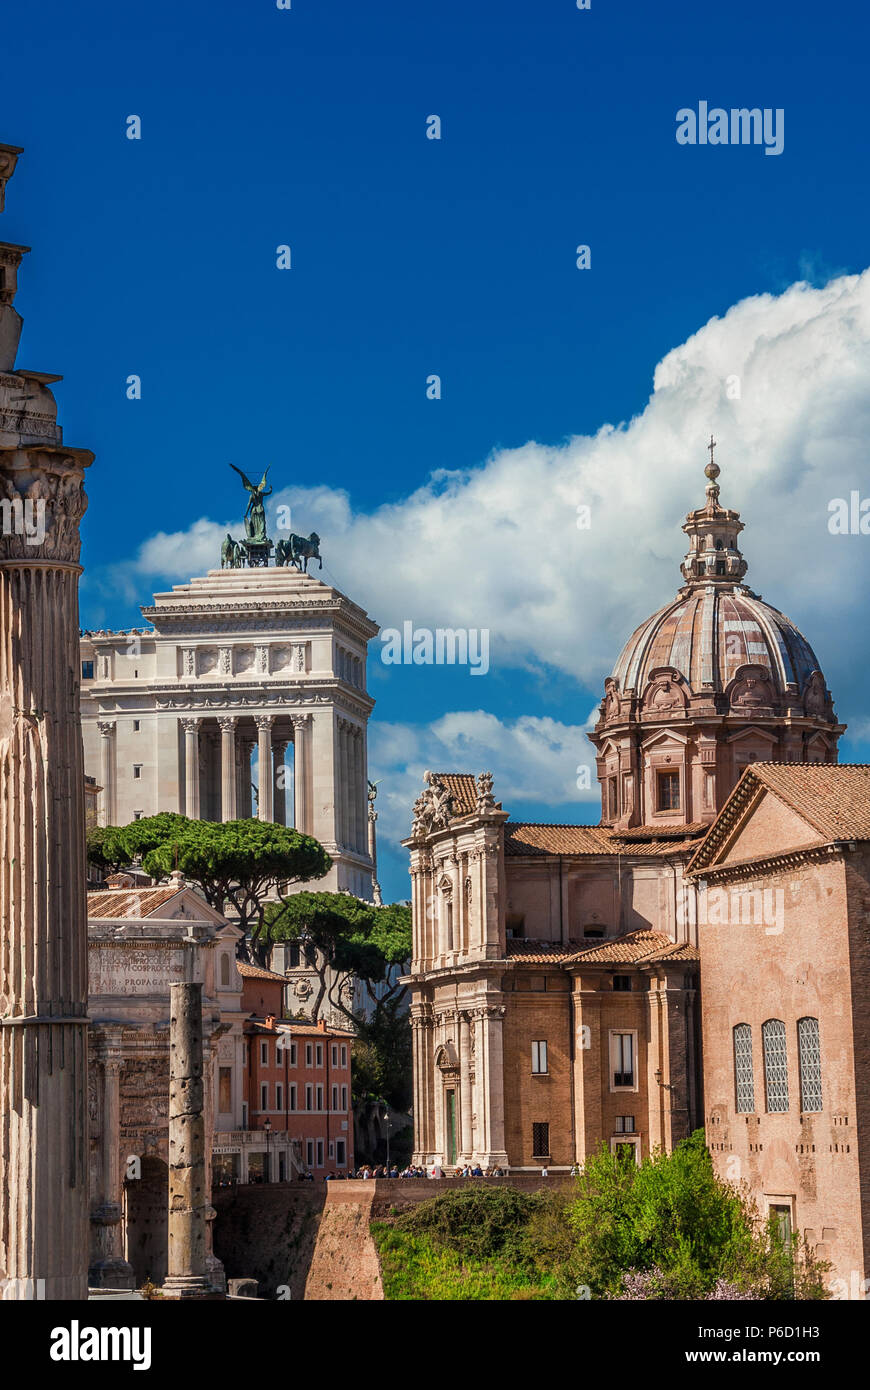 Les ruines anciennes, classiques et monuments église baroque dans le centre historique de Rome (avec copie espace ci-dessus) Banque D'Images